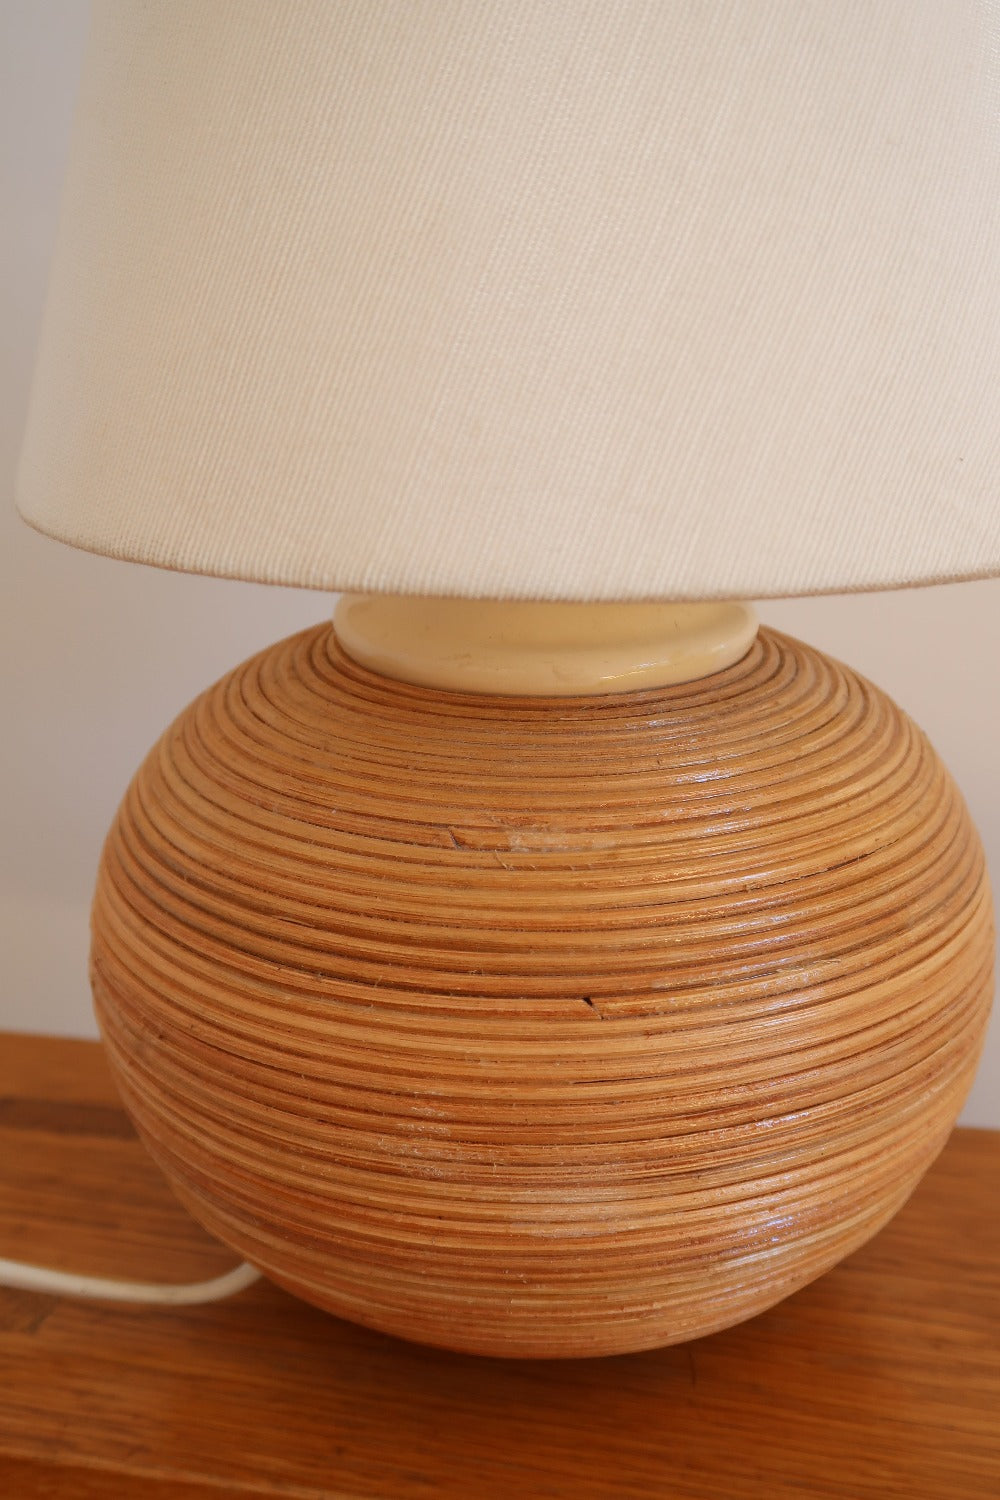 lampe à poser bureau abat jour blanc céramique vintage cordée scandinave